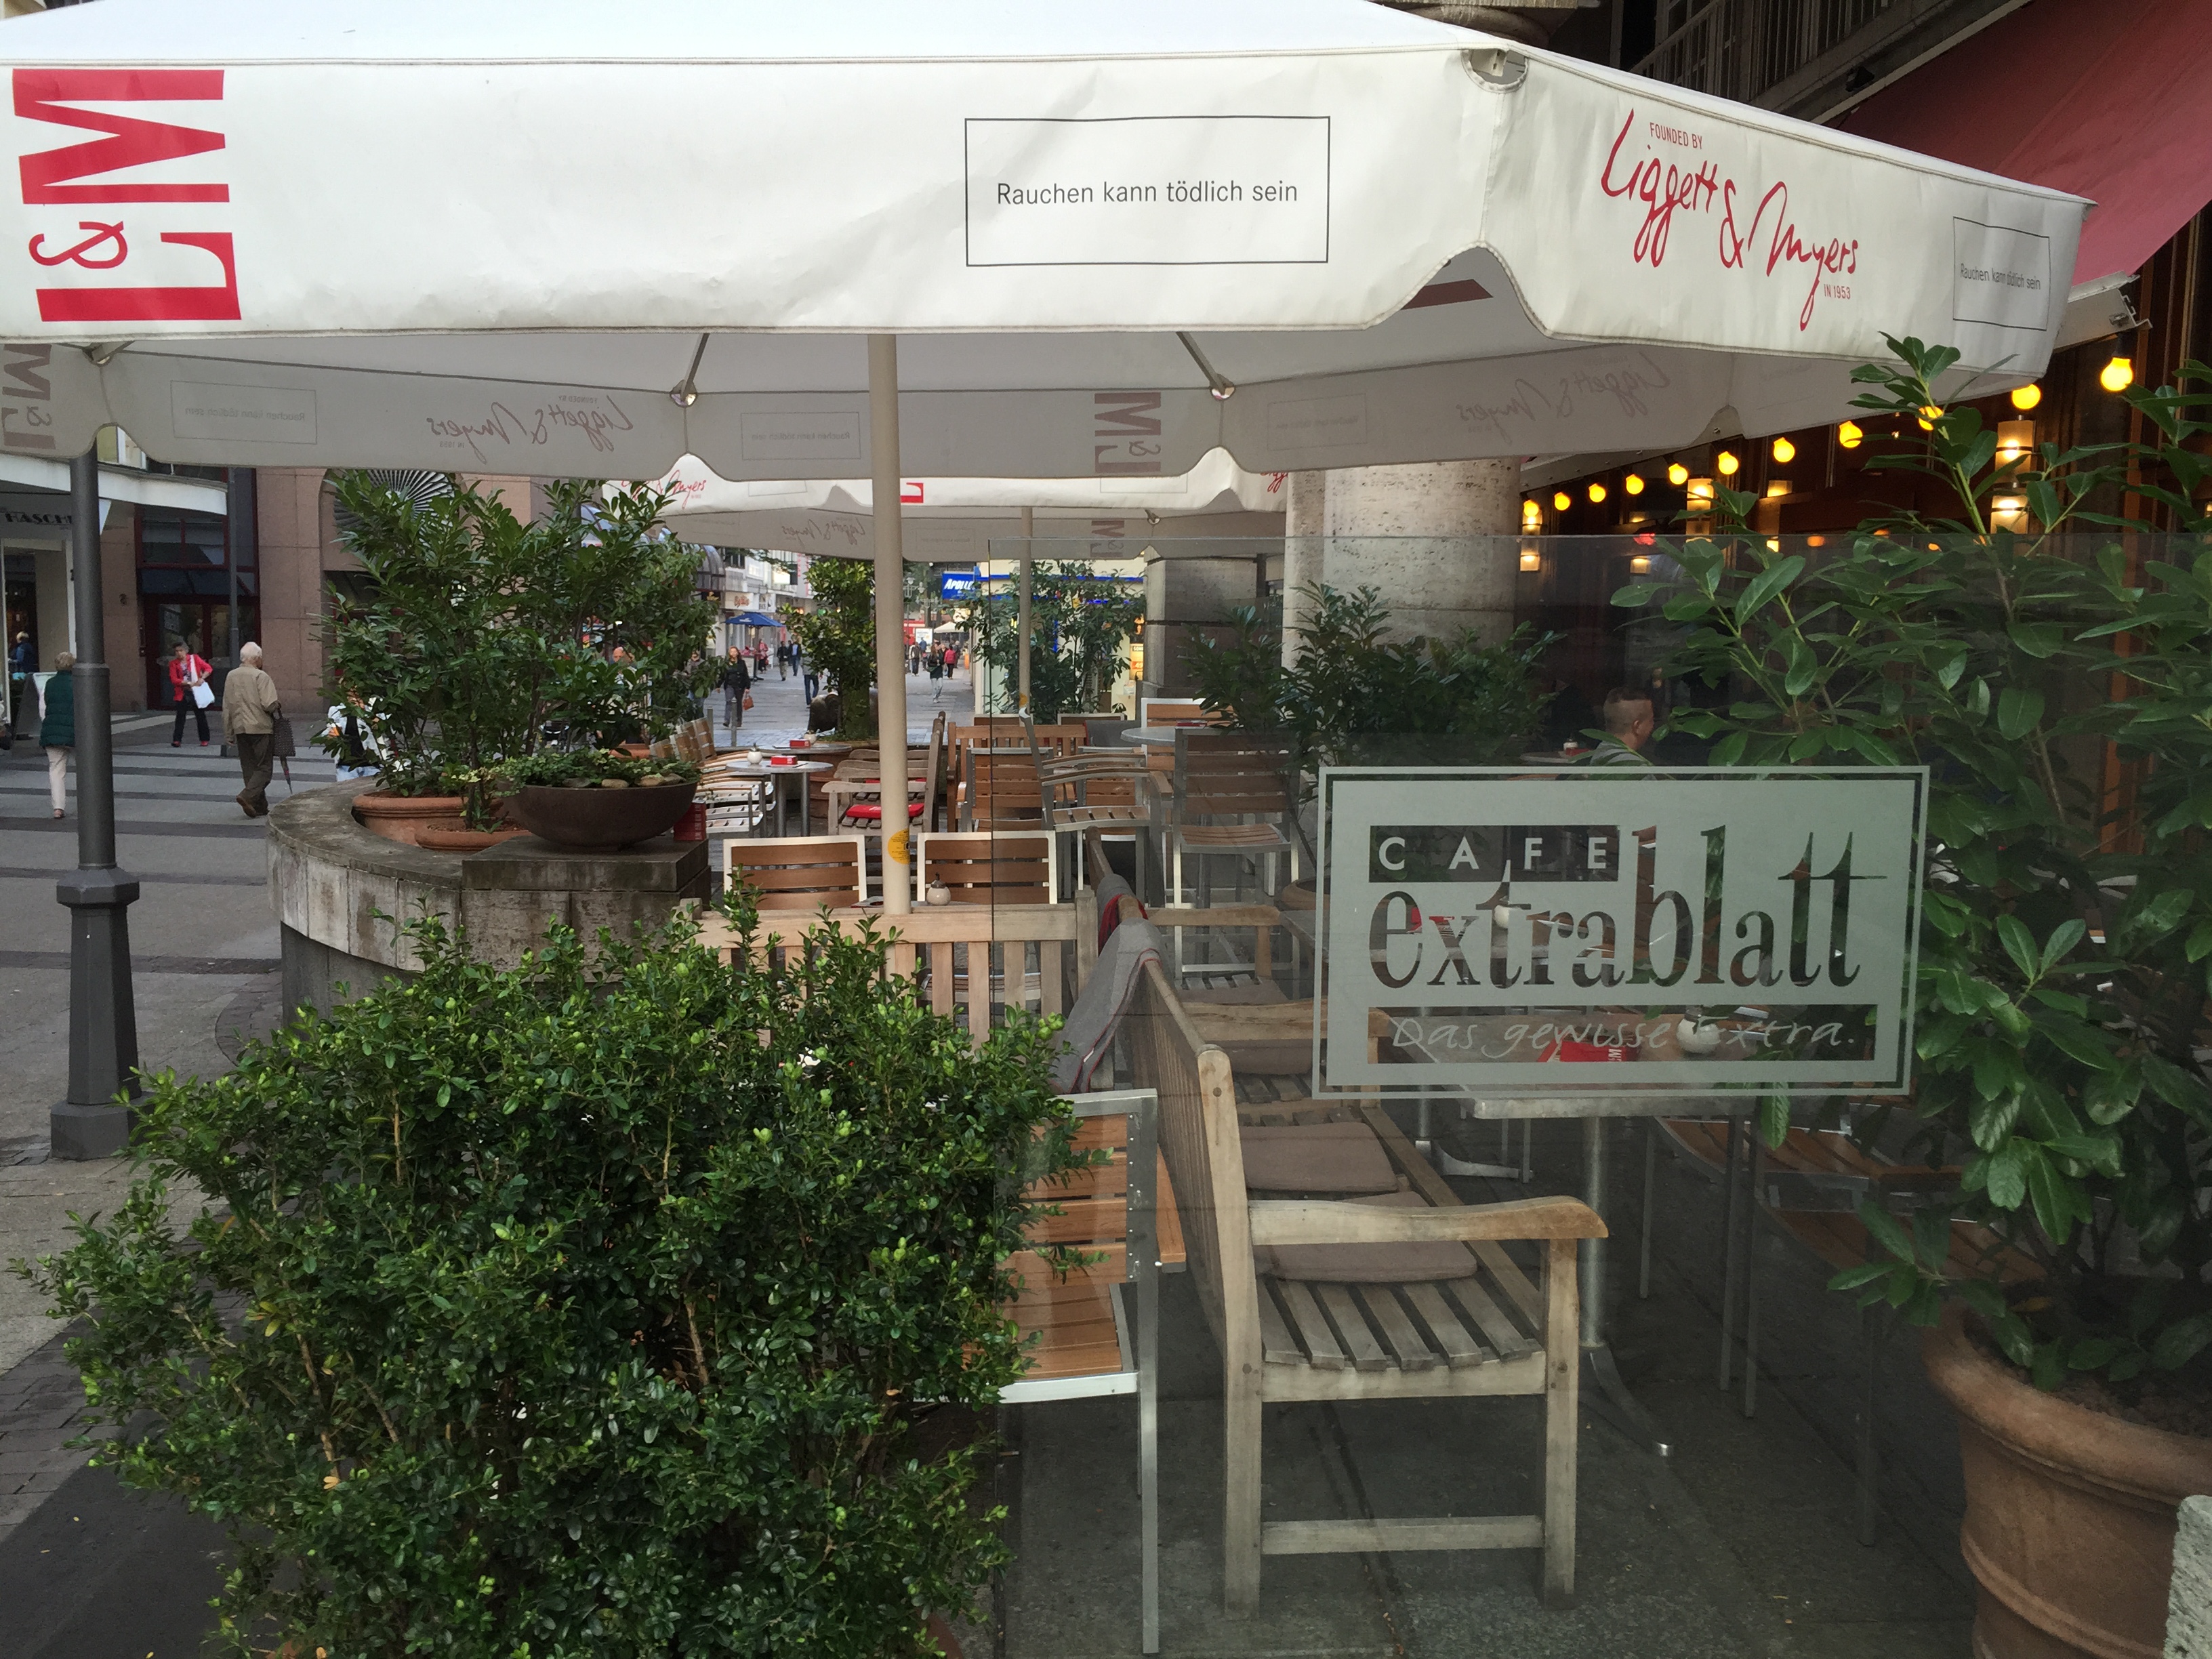 Terrasse Cafe Extrablatt Barmen